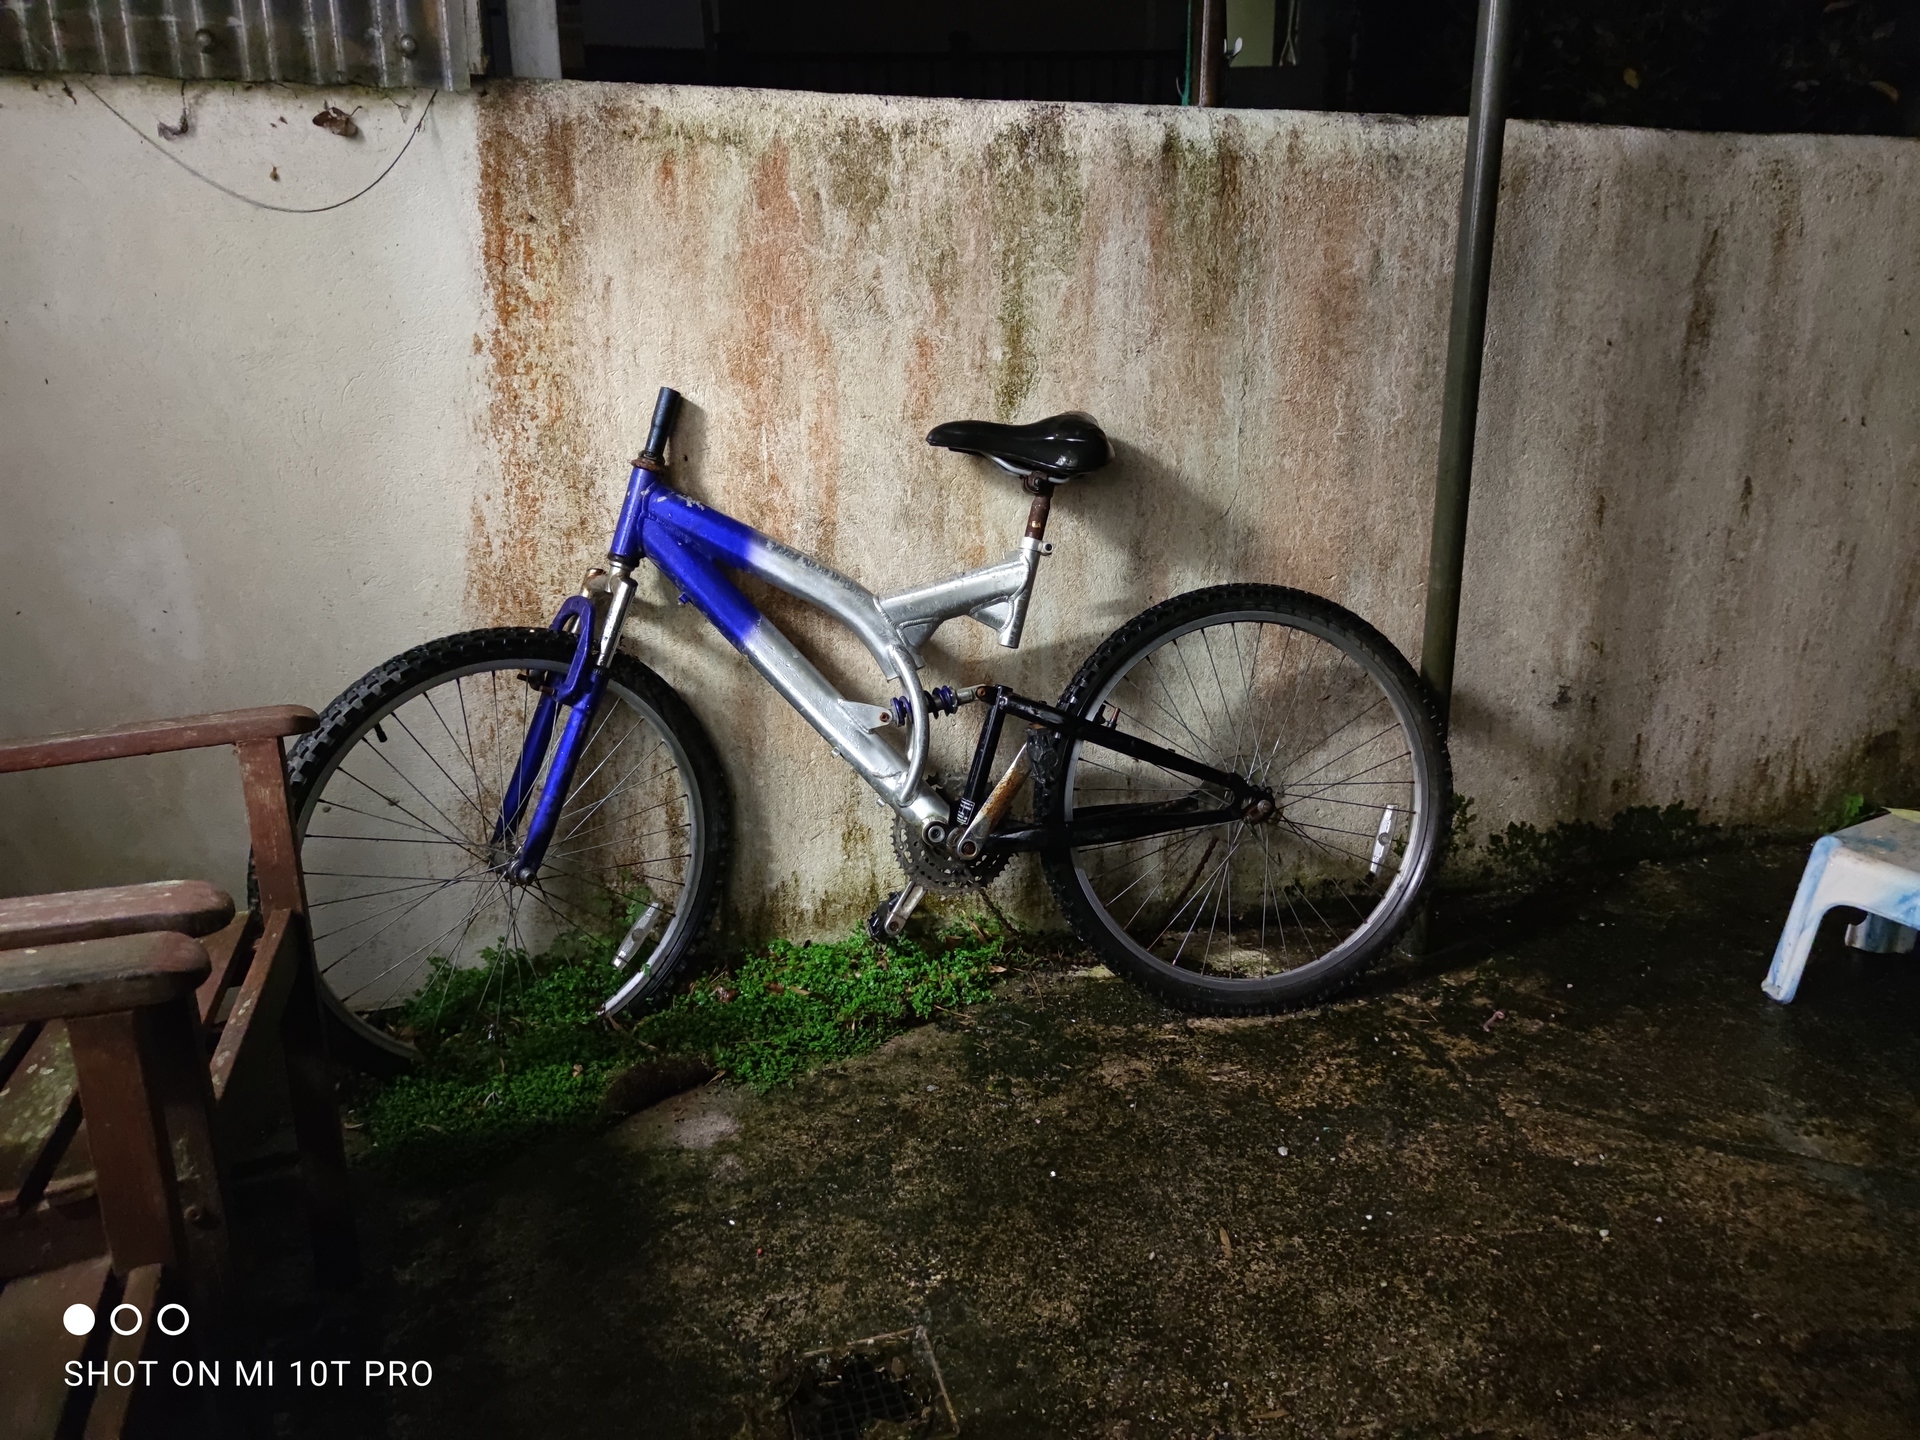 小米Mi 10T Pro Night Time摄像机样品的自行车样品